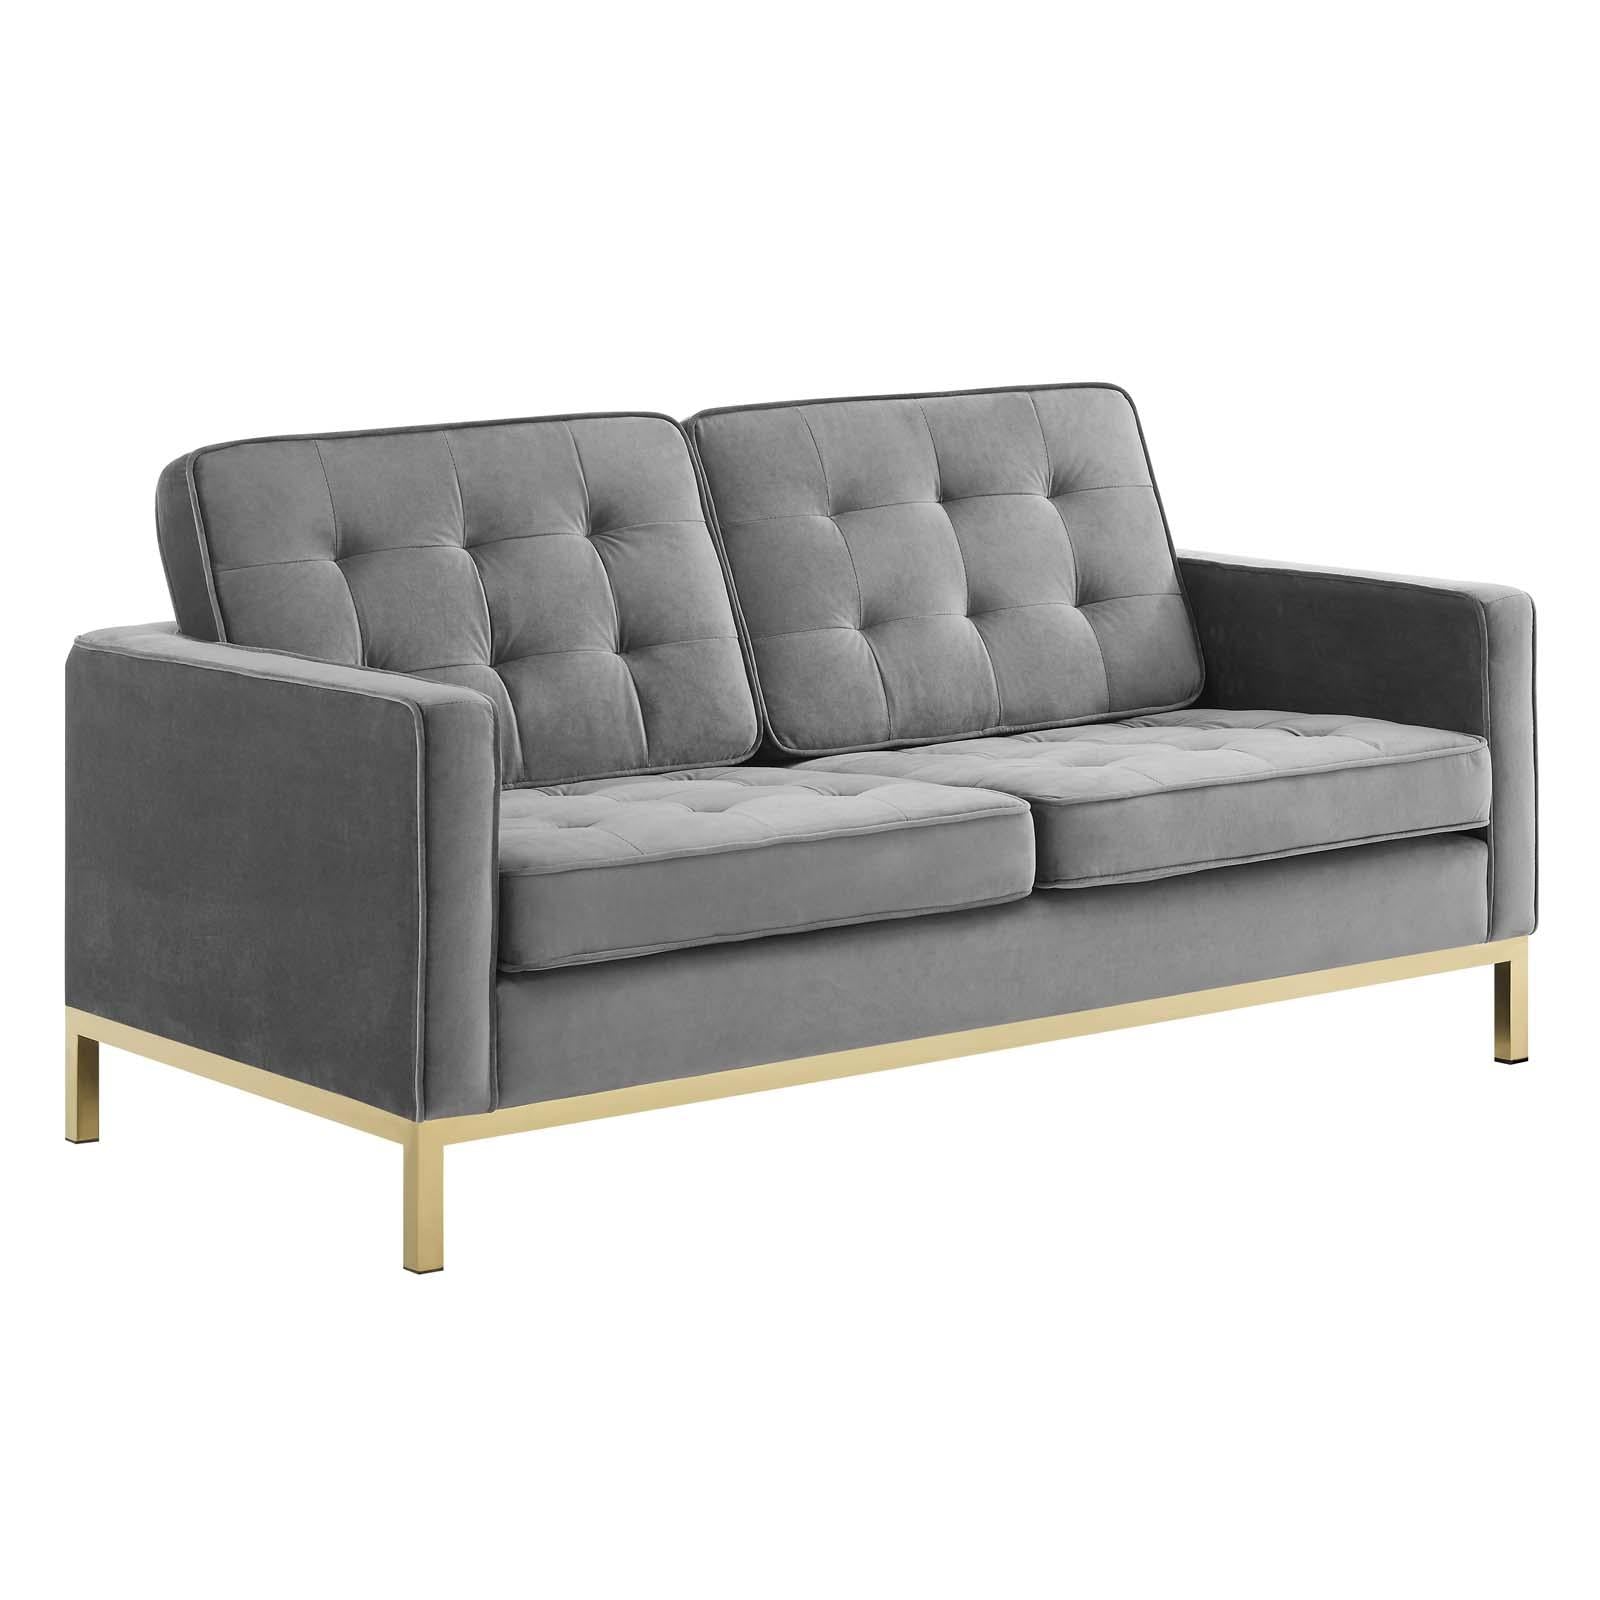 Modway Furniture Modern Loft Gold Stainless Steel Leg Performance Velvet Sofa and Loveseat Set - EEI-4099